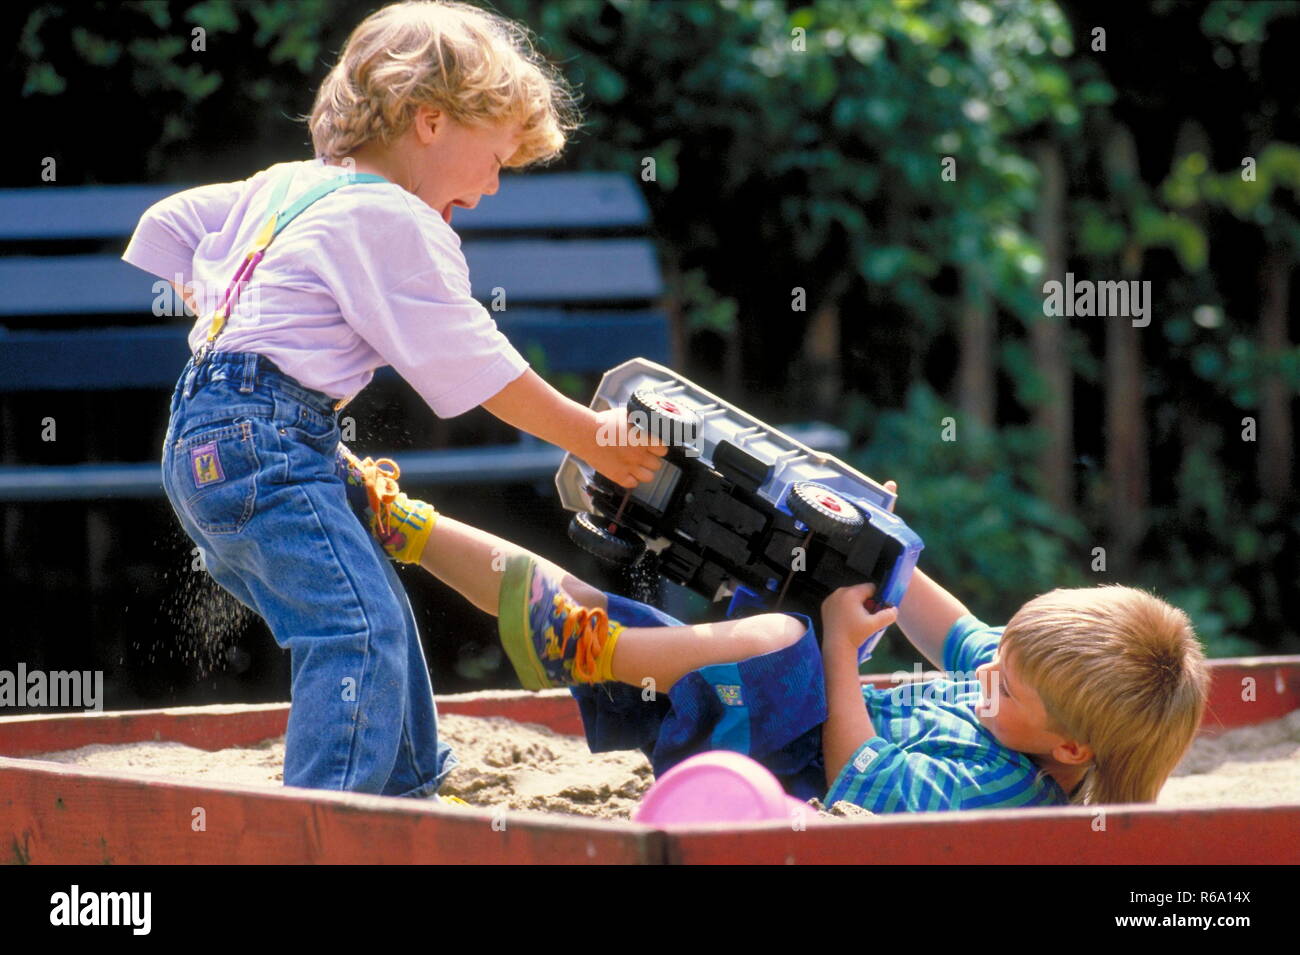 Ritratto, Parkszene, 2 Jungen, 5 Jahre, streiten sich im Sandkasten um einen grossen Spielzeuglaster Foto Stock